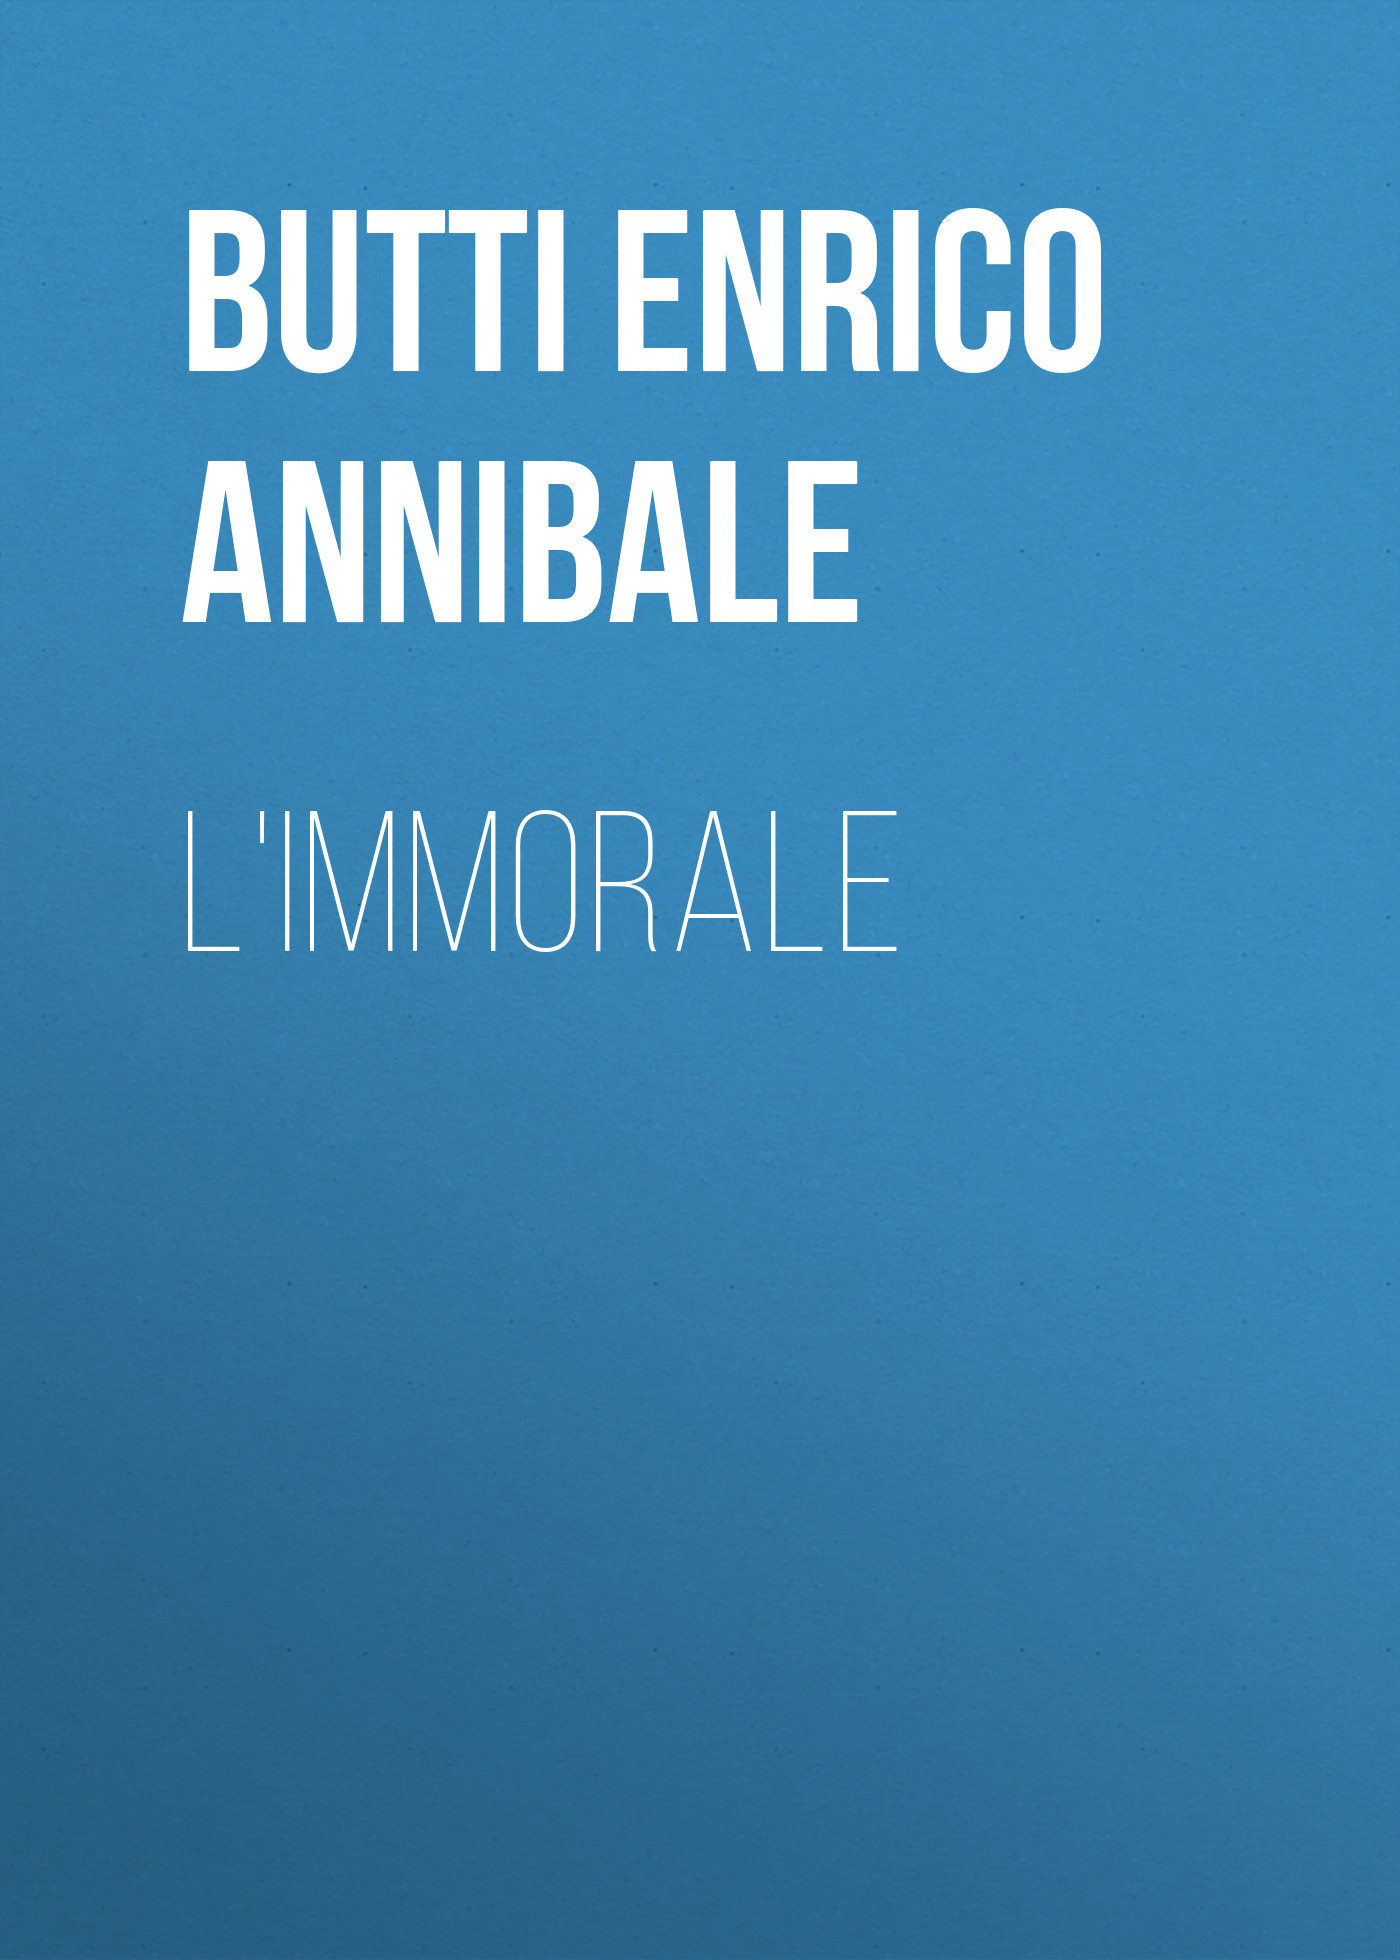 Butti Enrico Annibale L'Immorale